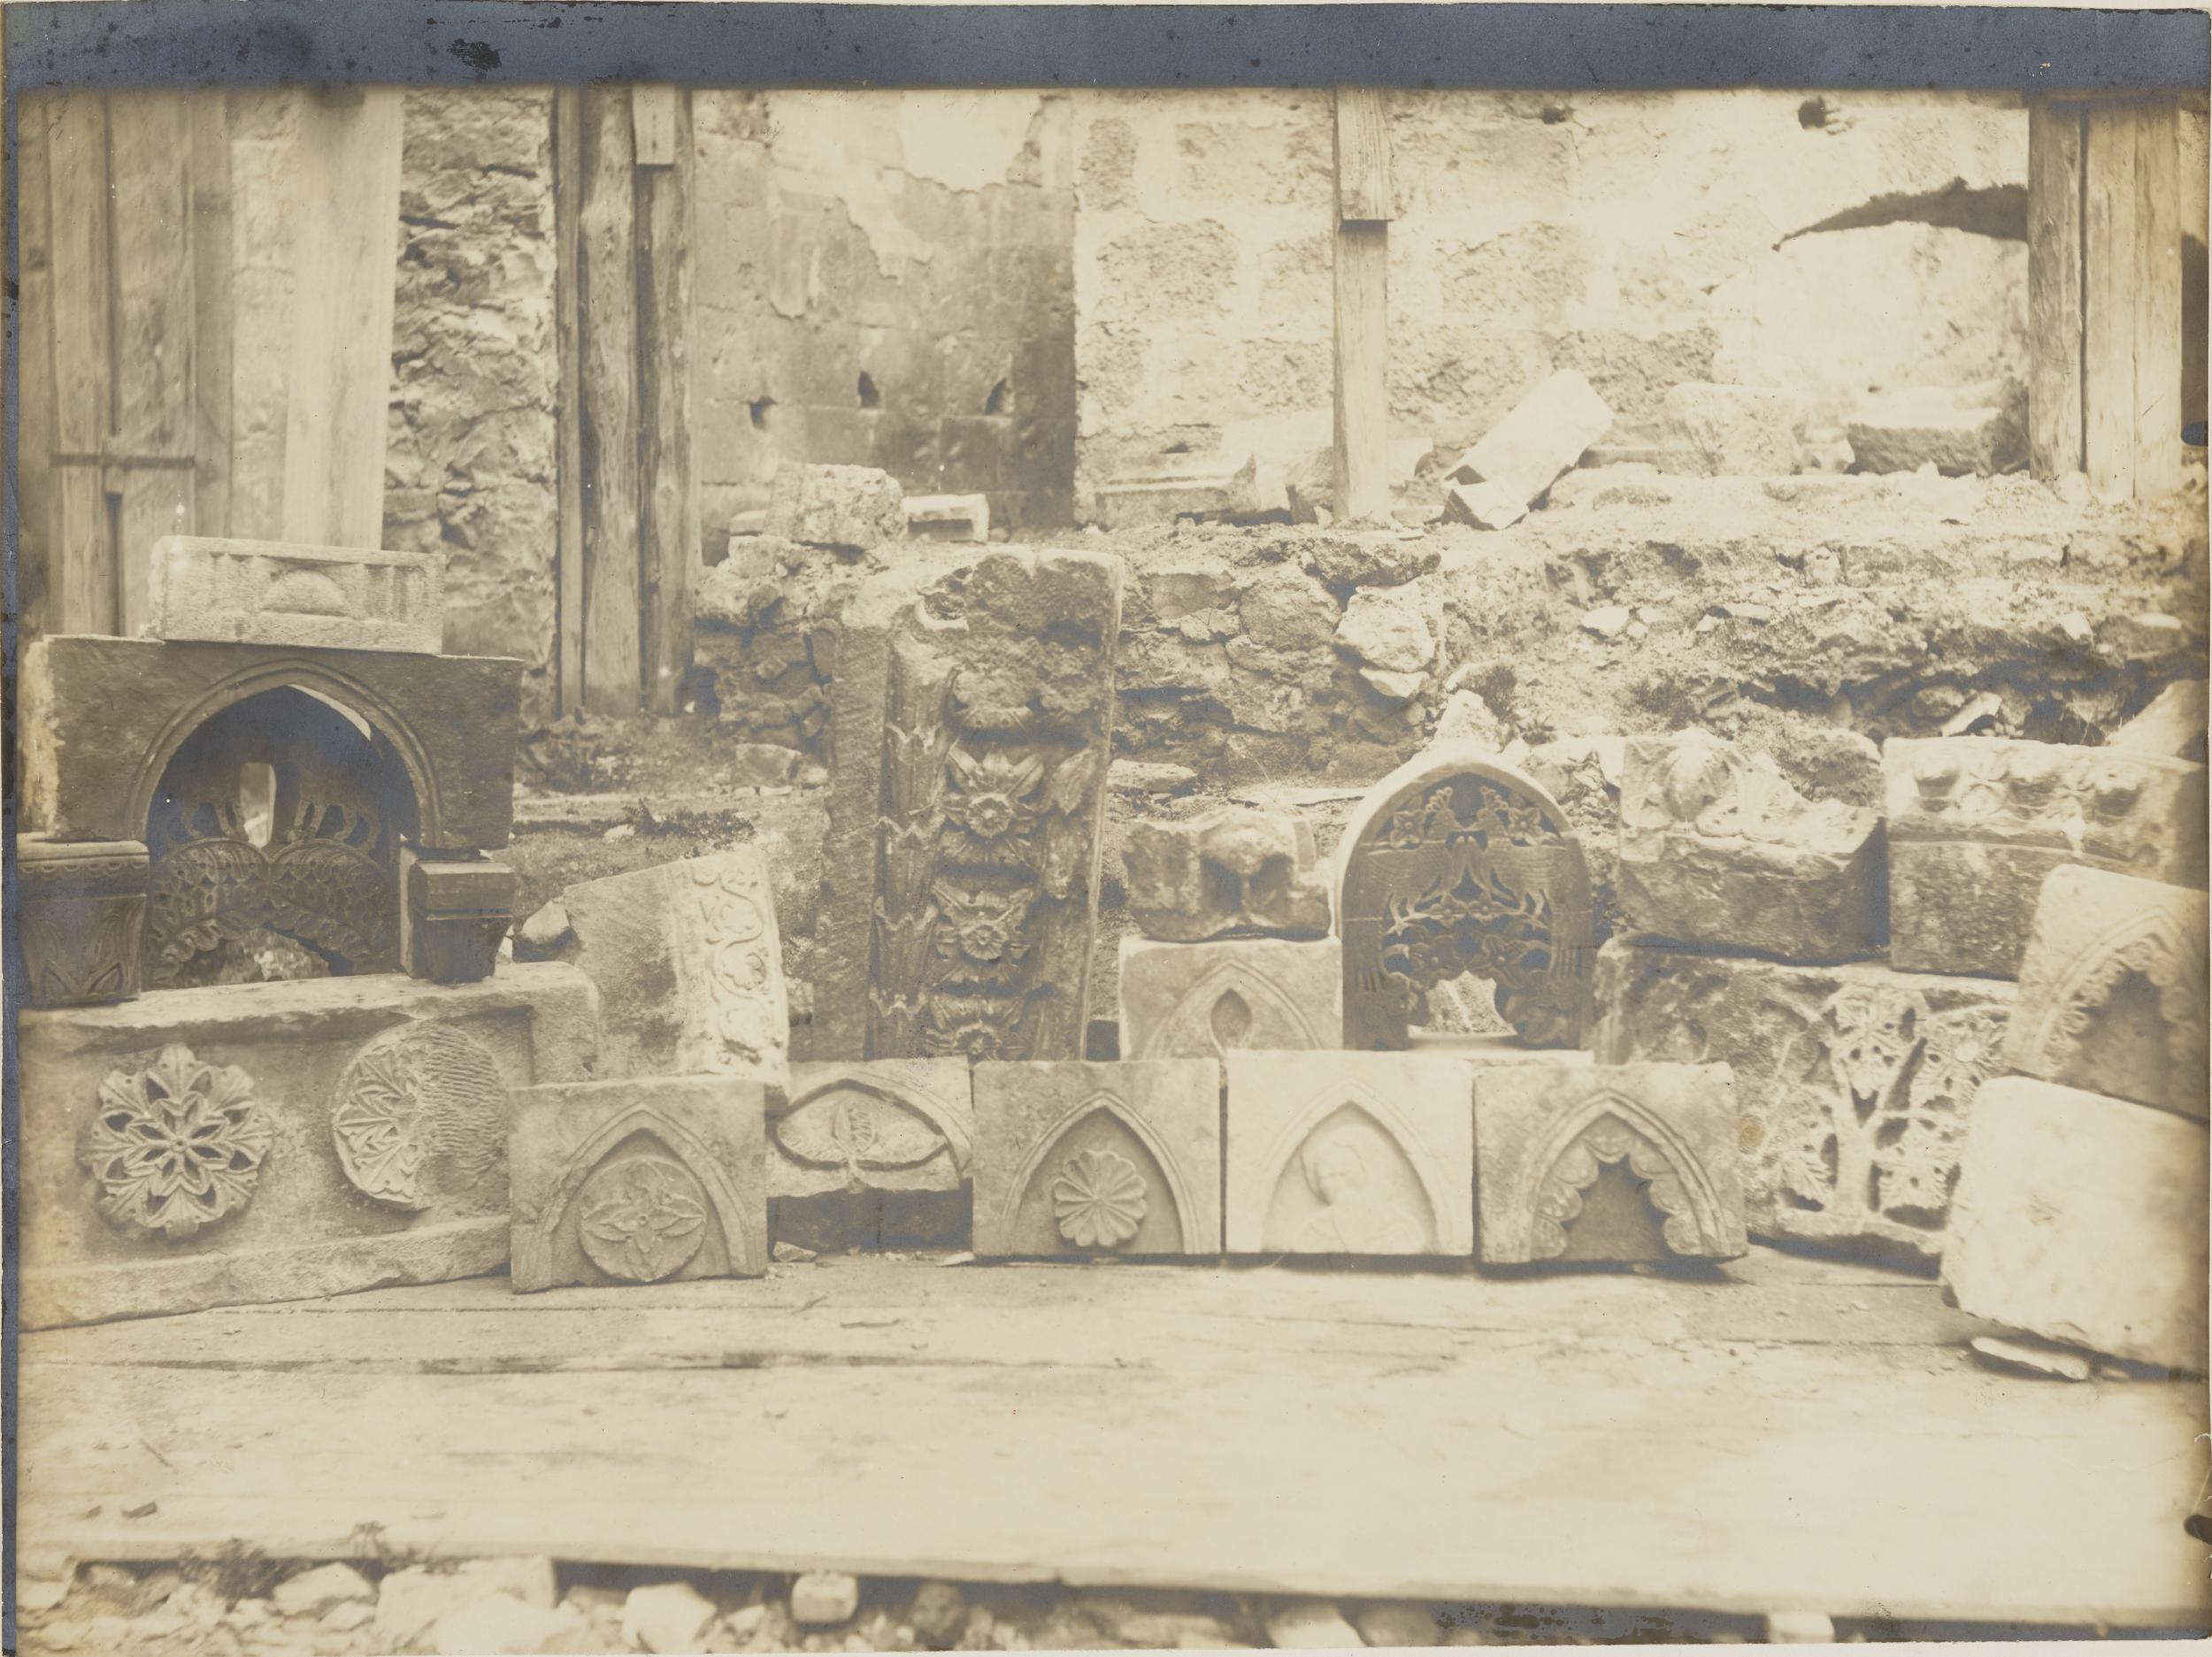 Fotografo non identificato, Conversano - Cattedrale, frammento di decorazione di portale, prima dei restauri del 1914, 1901-1925, gelatina ai sali d'argento/carta, MPI155345